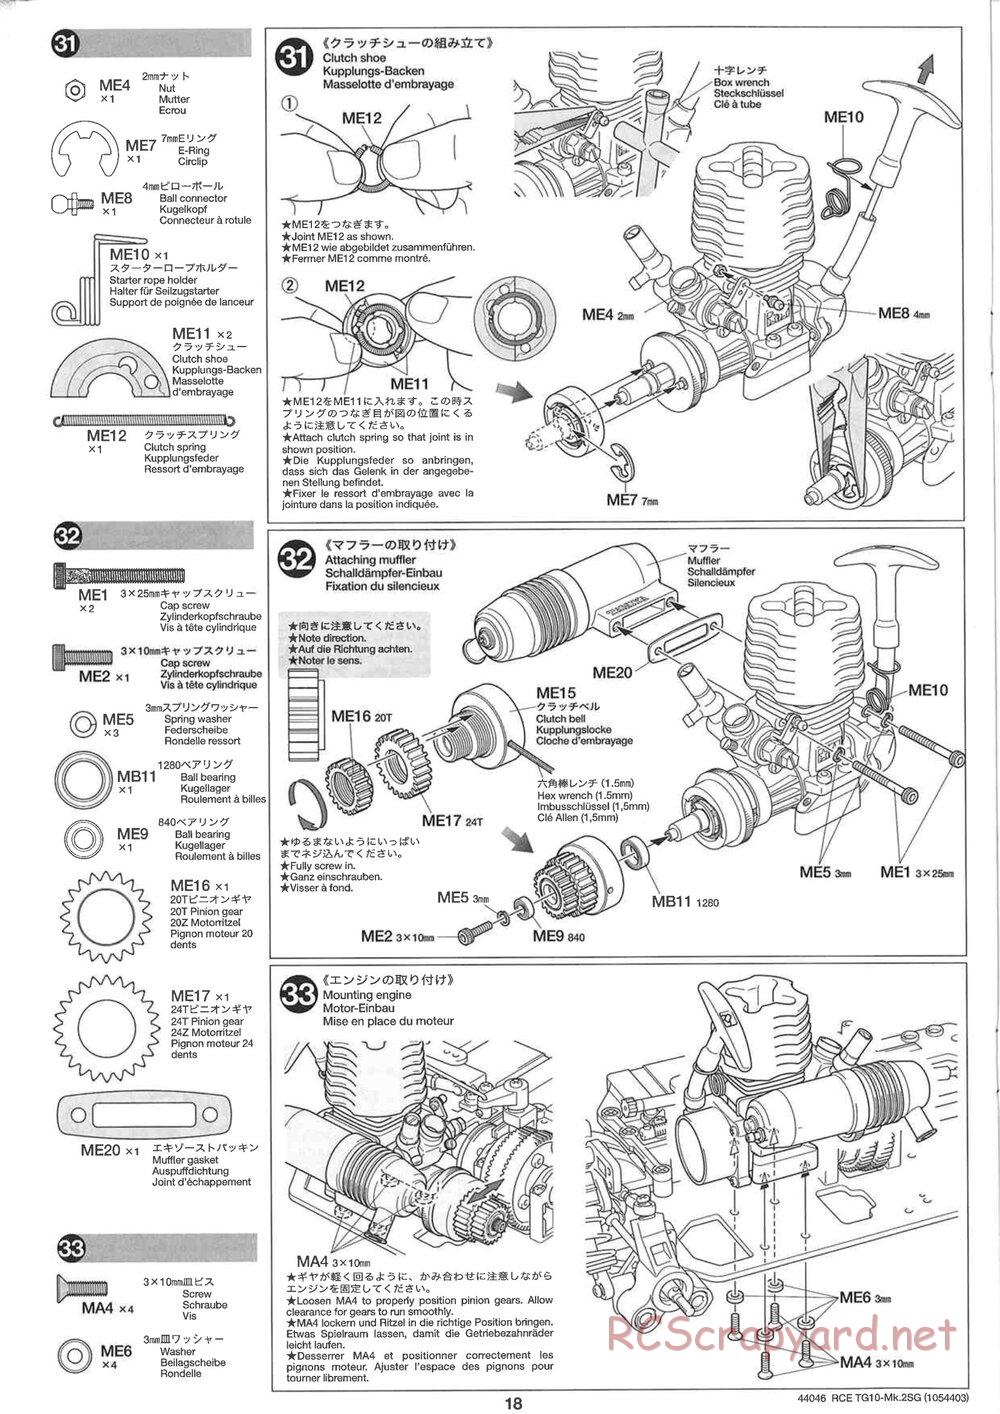 Tamiya - TG10 Mk.2SG Chassis - Manual - Page 18